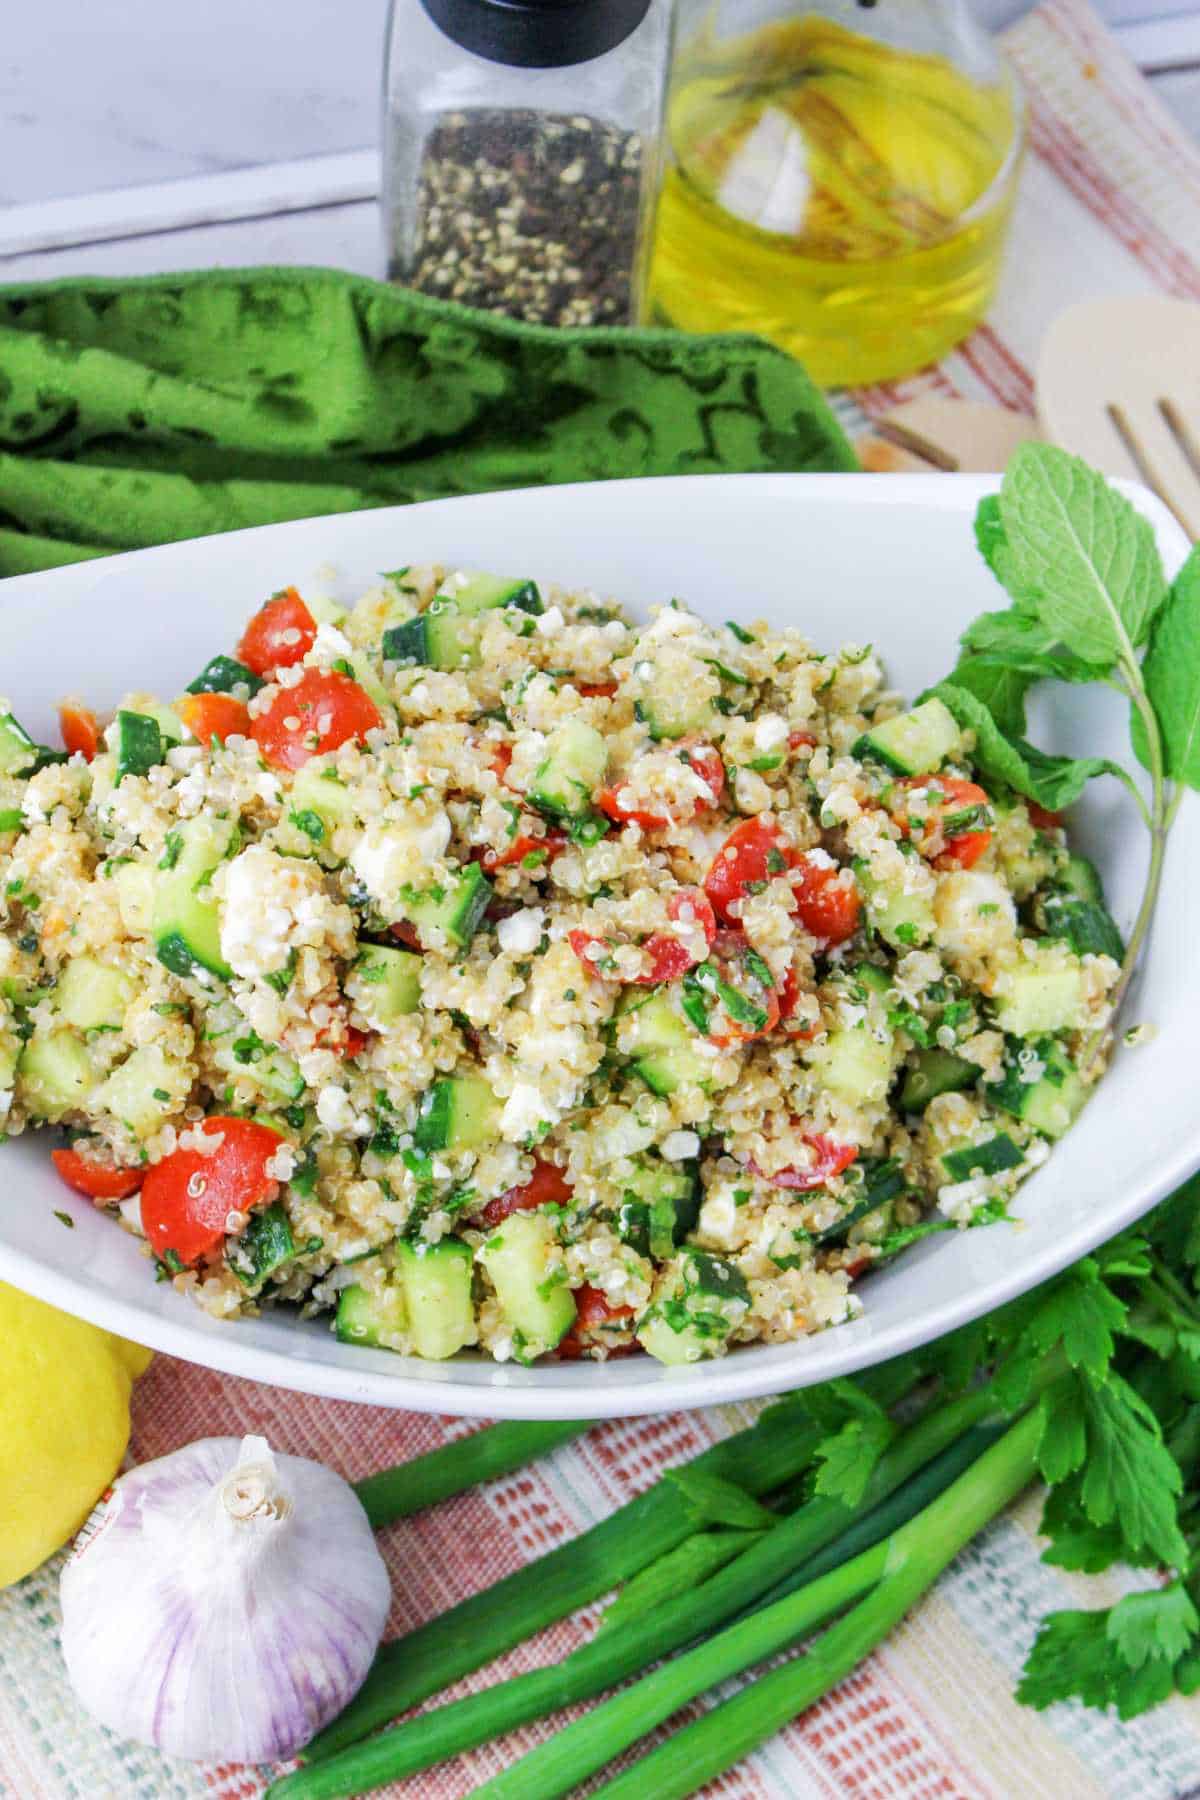 Tossed quinoa tabbouleh salad.